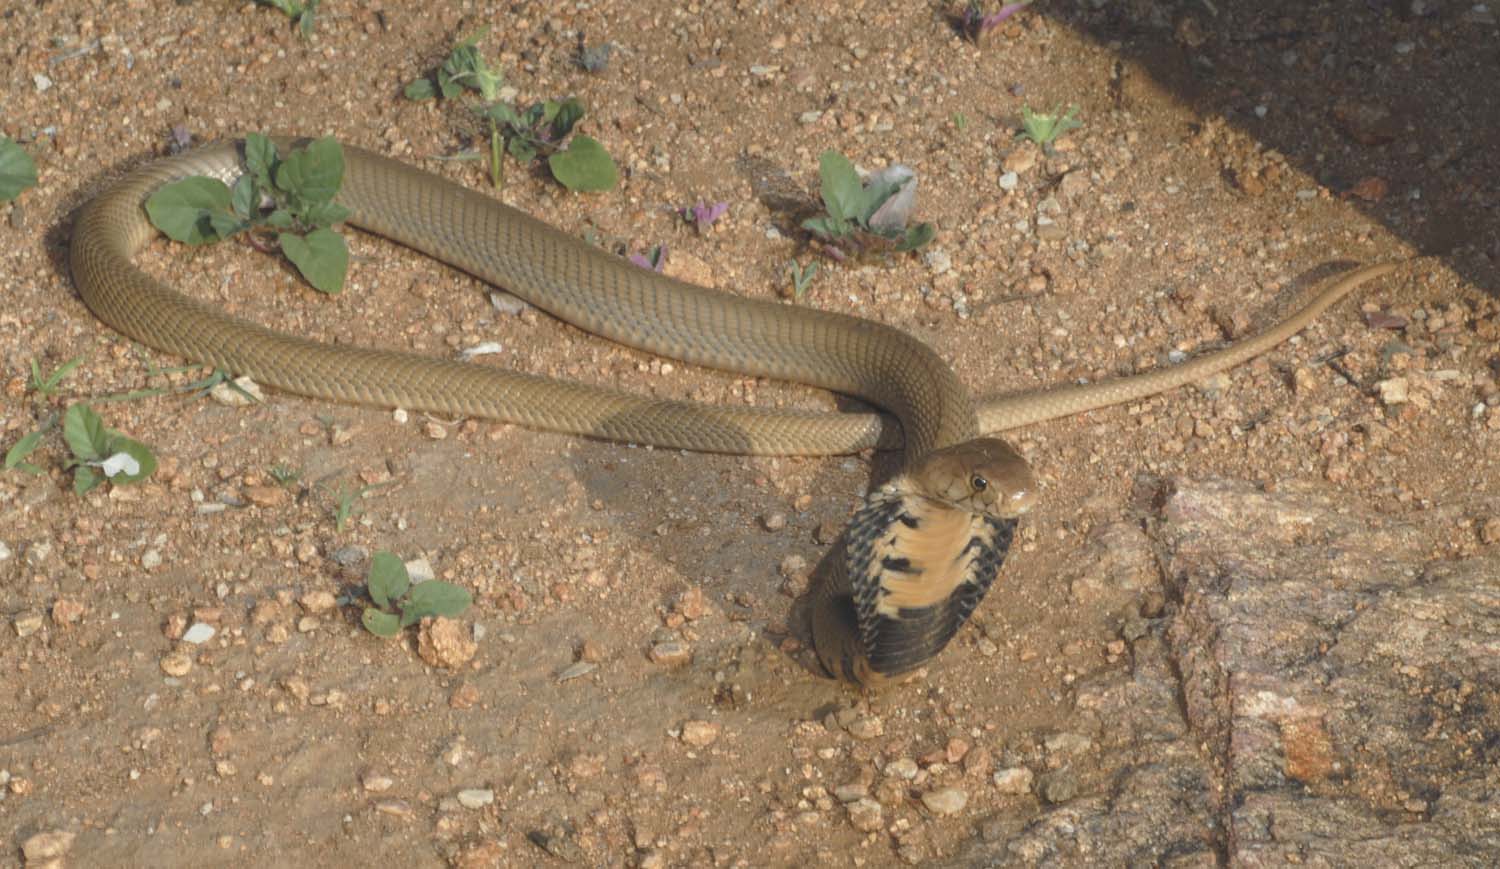 Mozambican cobra